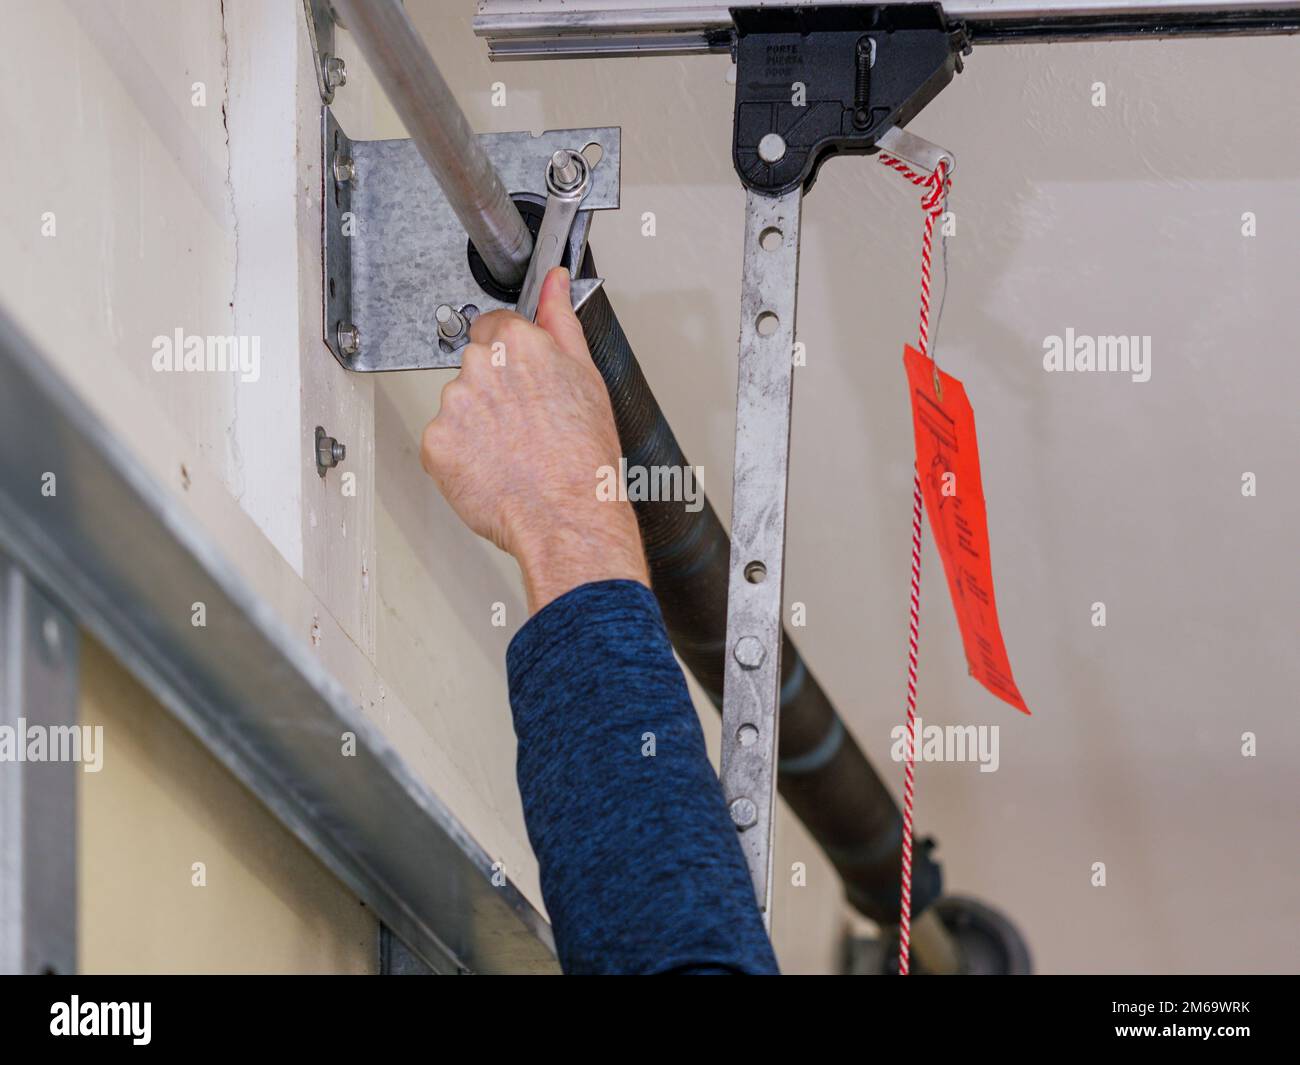 Man repairing electric garage door coiled tension spring. Installing and adjusting overhead garage door opener. Stock Photo